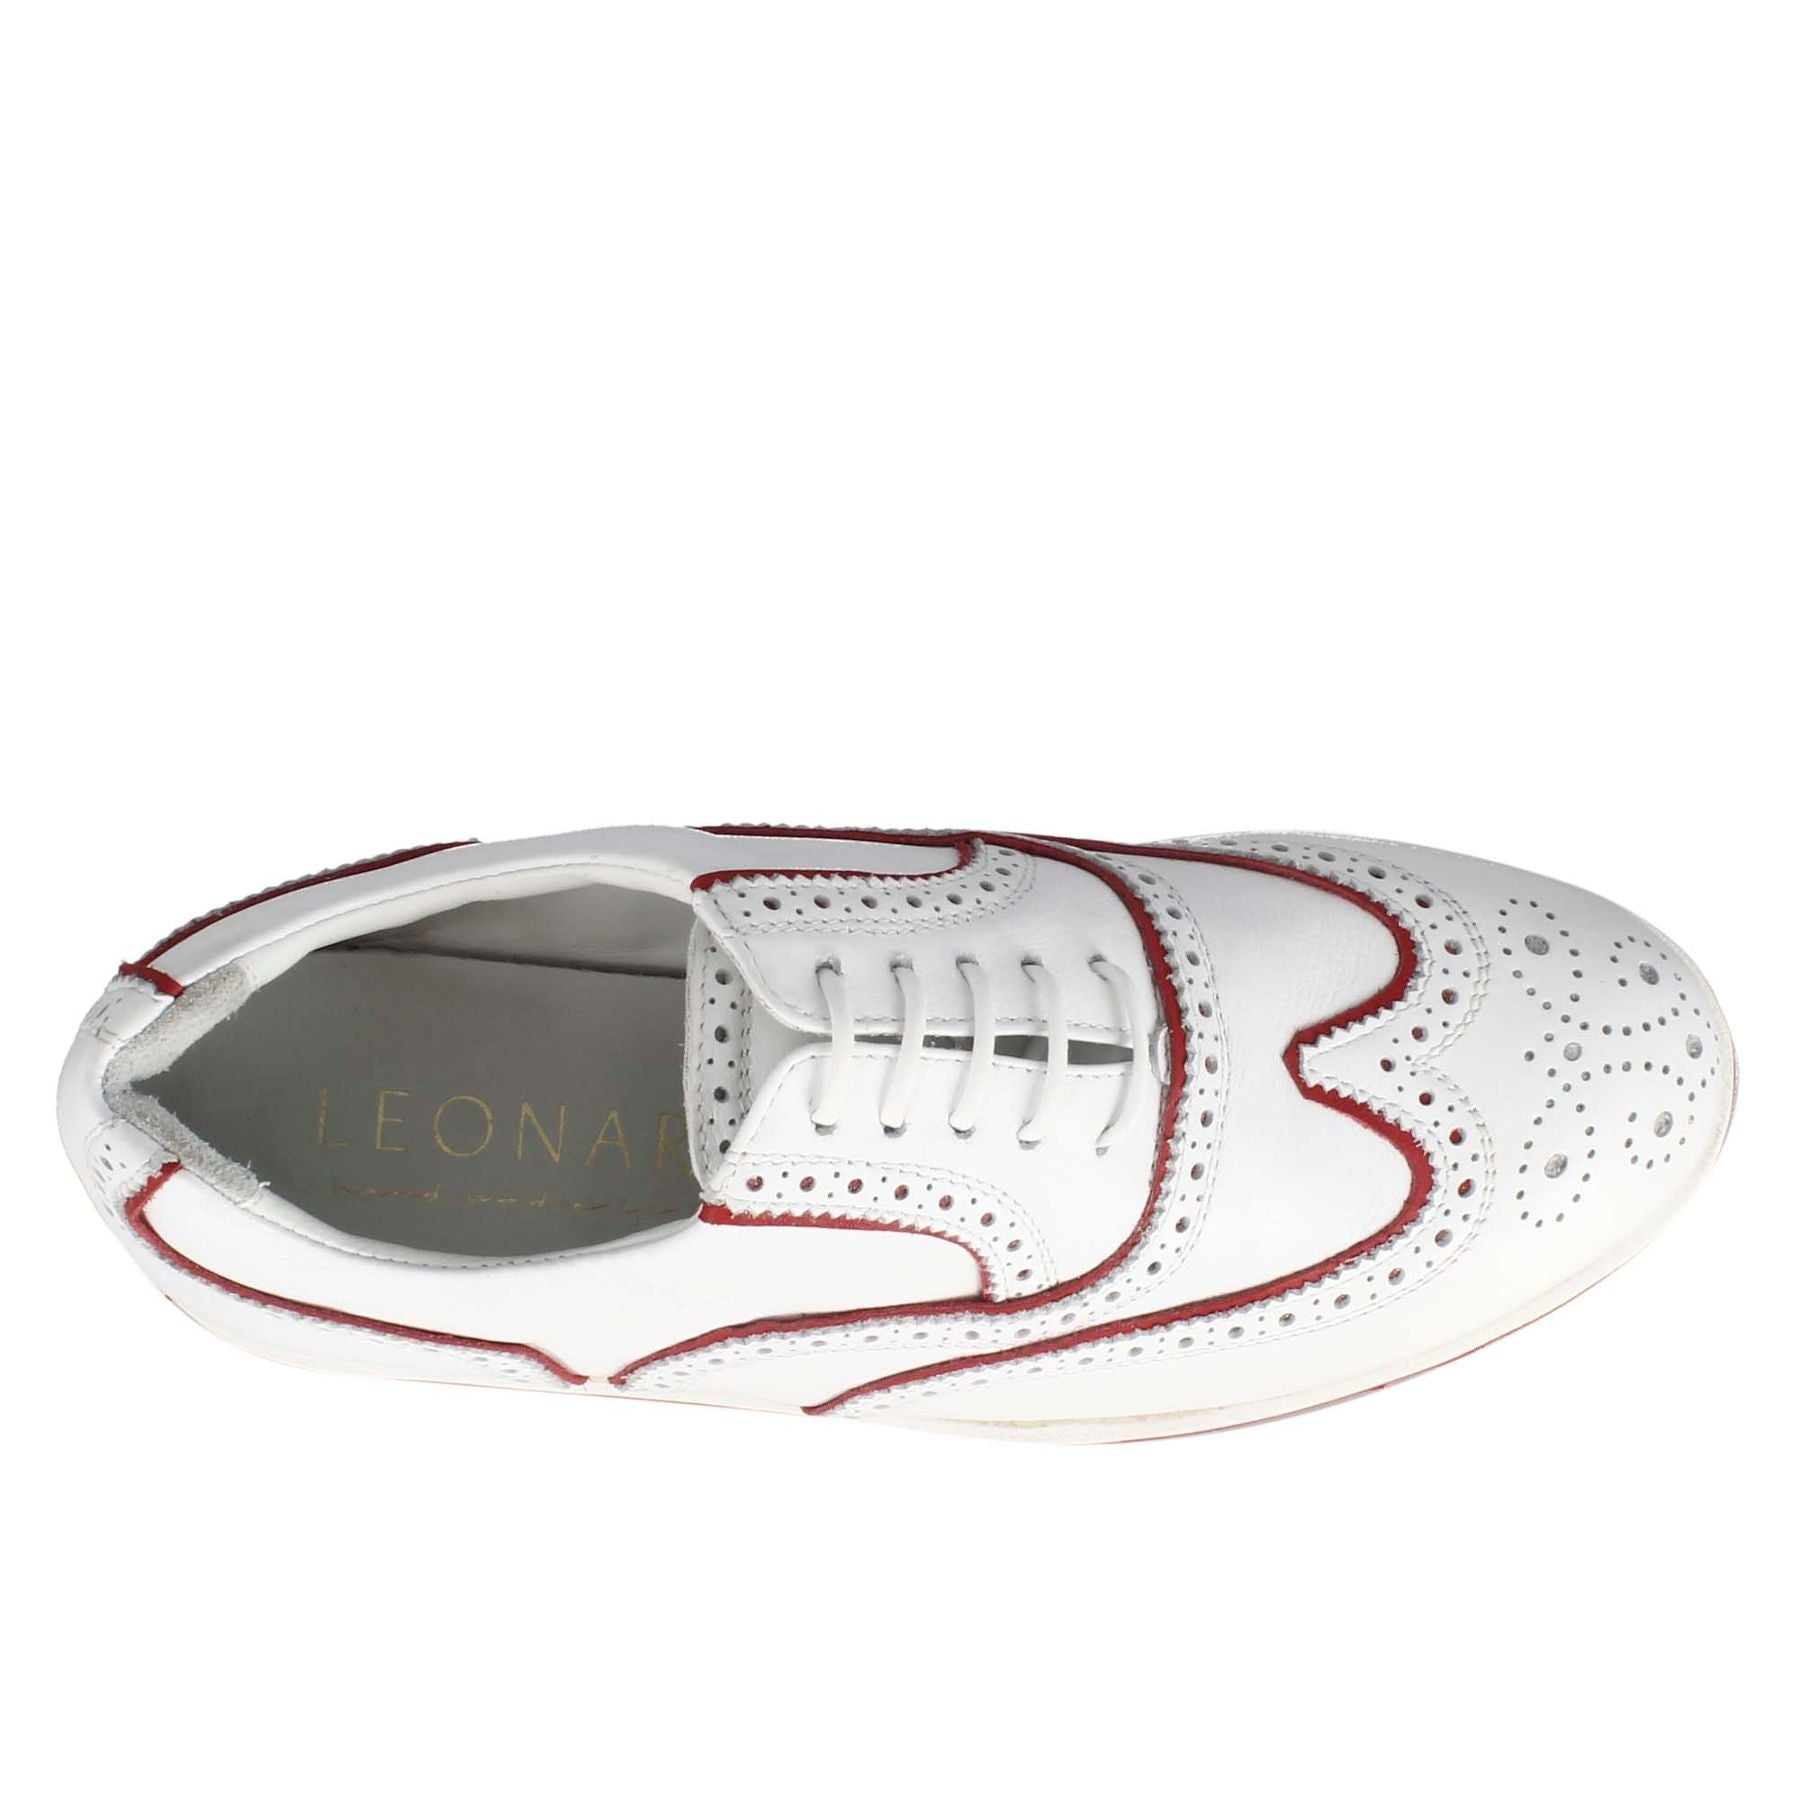 Chaussures de golf pour femmes faites à la main en cuir blanc avec détails rouges